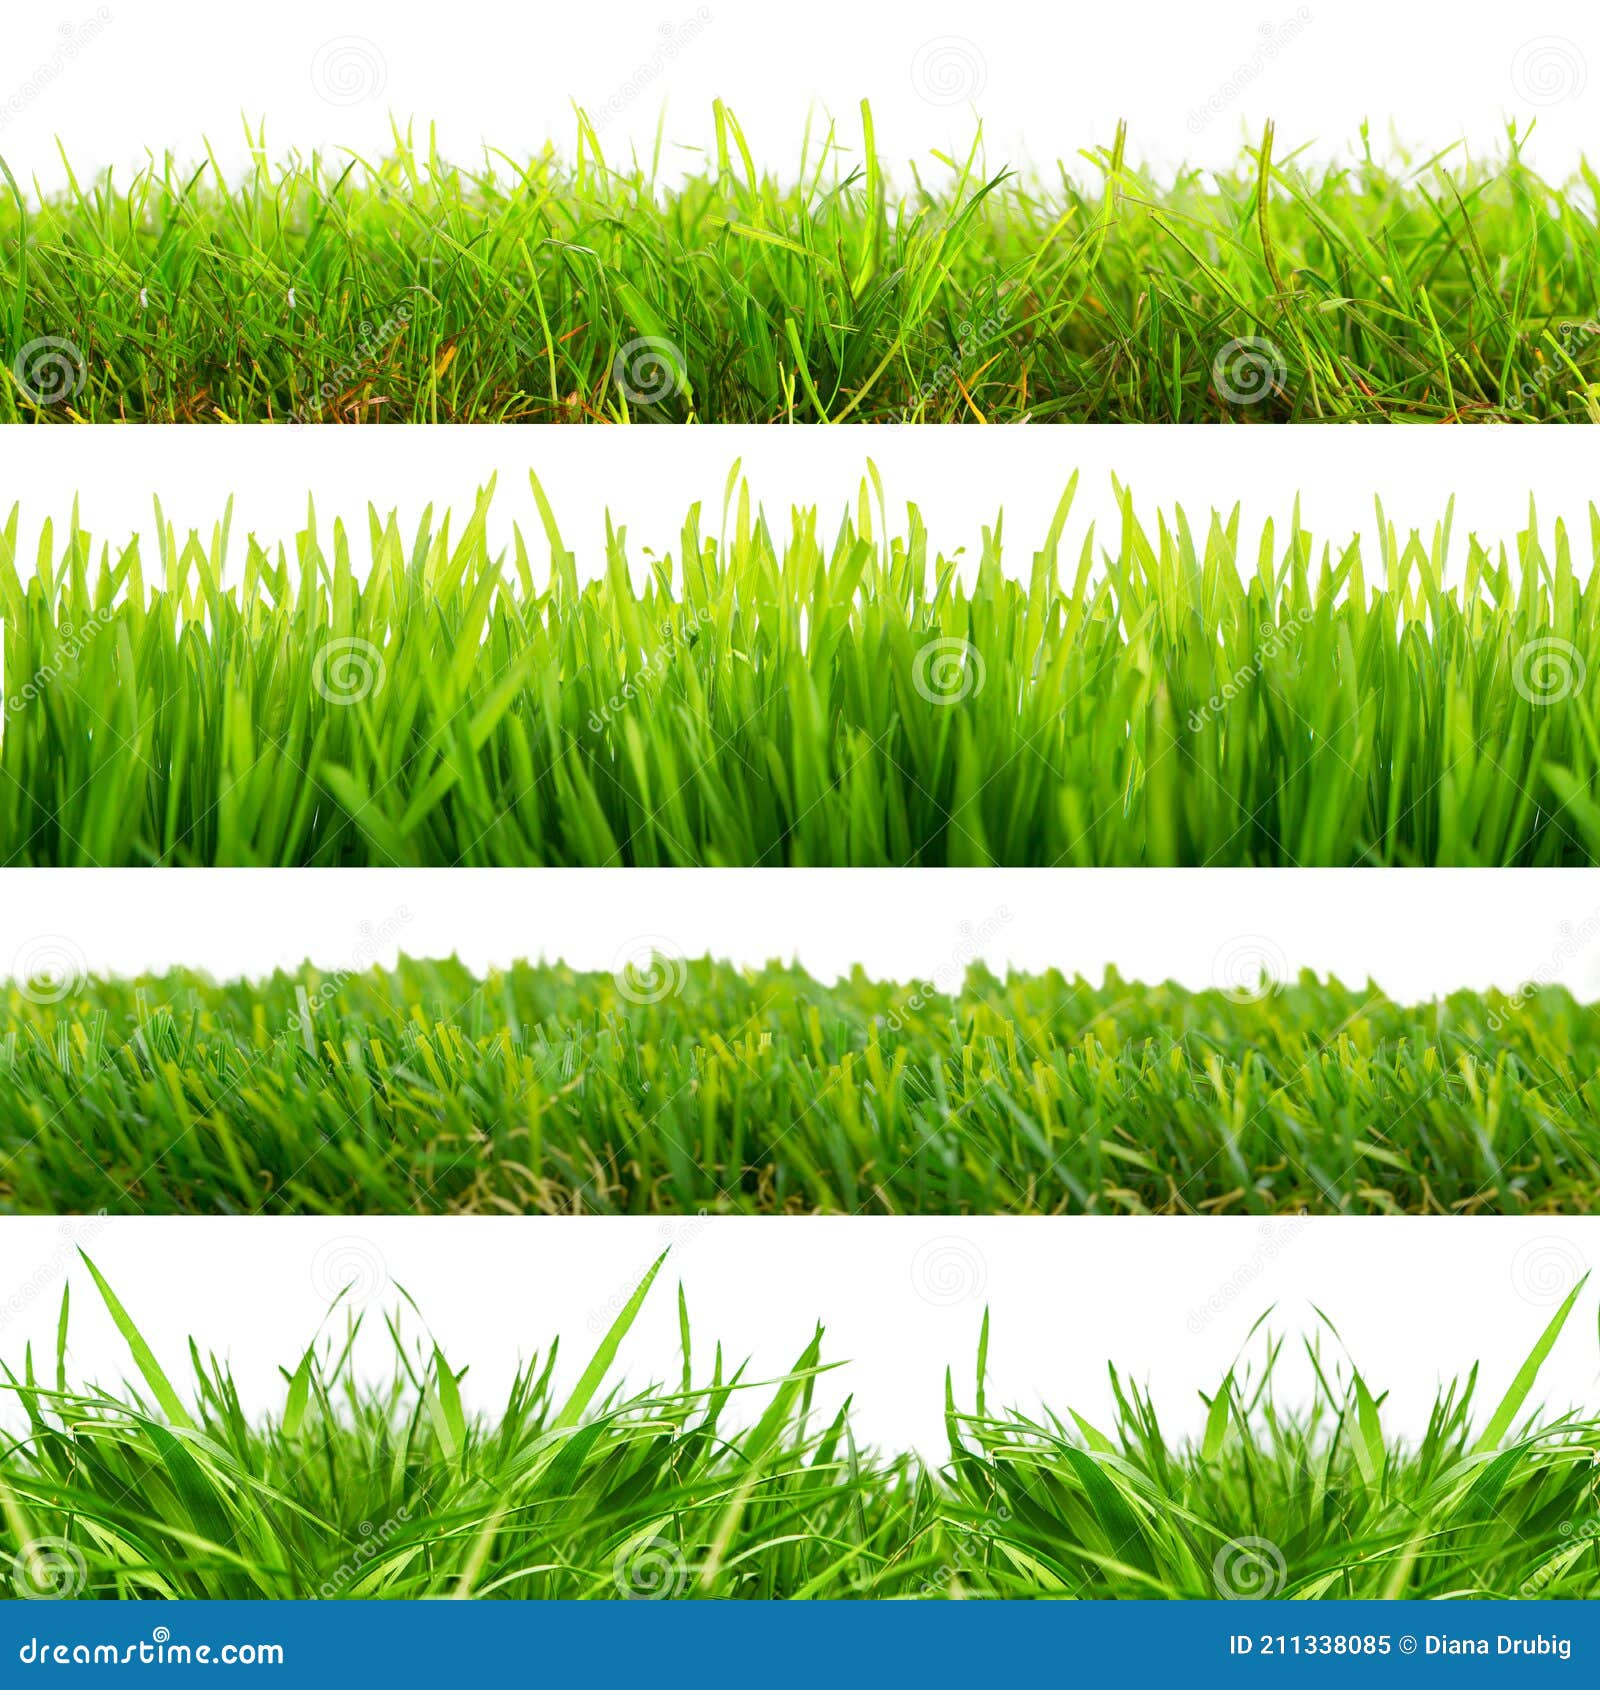 4 Diferentes Tipos De Césped Verde Fresco Con Hojas Y Hojas Contra Fondo De  Estudio Blanco Aislado Imagen de archivo - Imagen de frontera, prado:  211338085